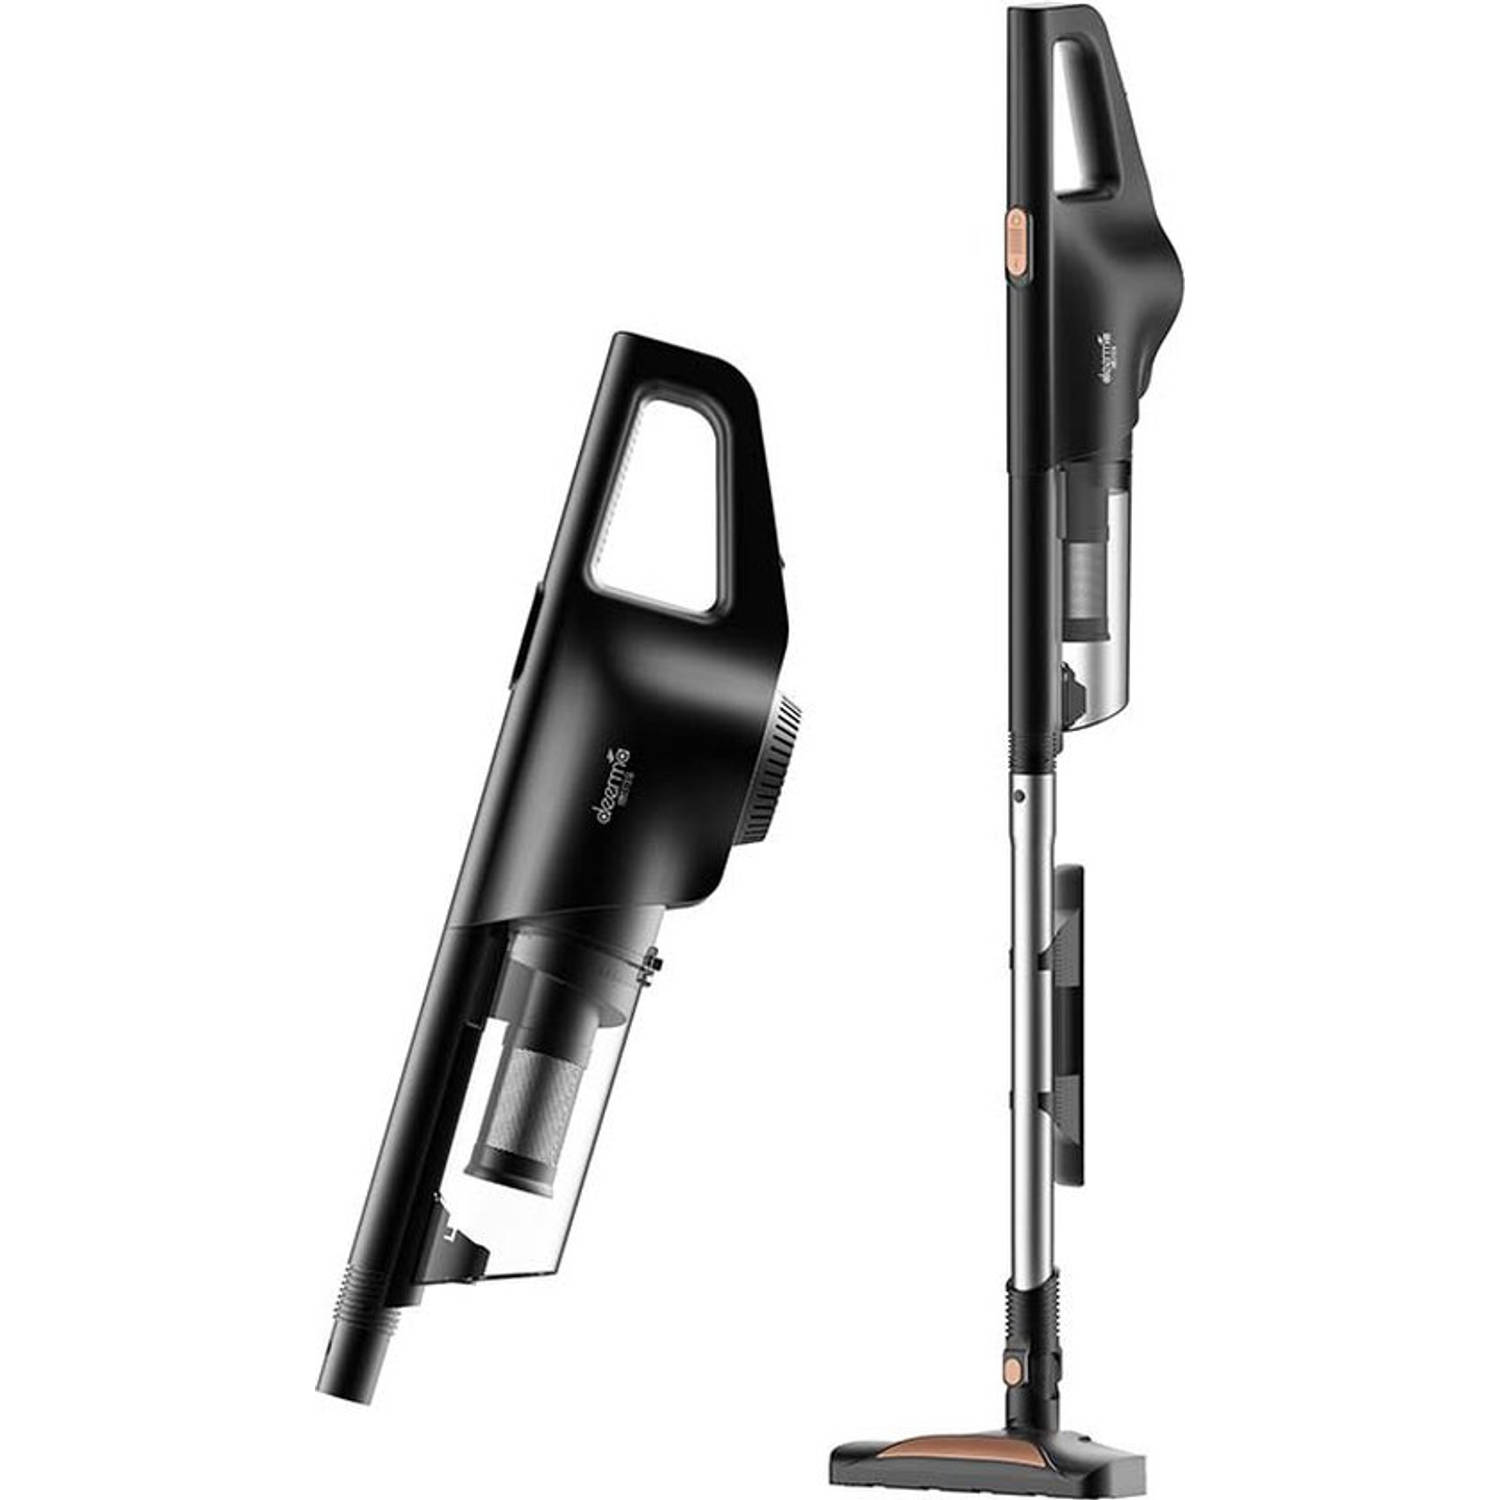 Vacuum cleaner Deerma DX600 (black) Steelstofzuiger met snoer